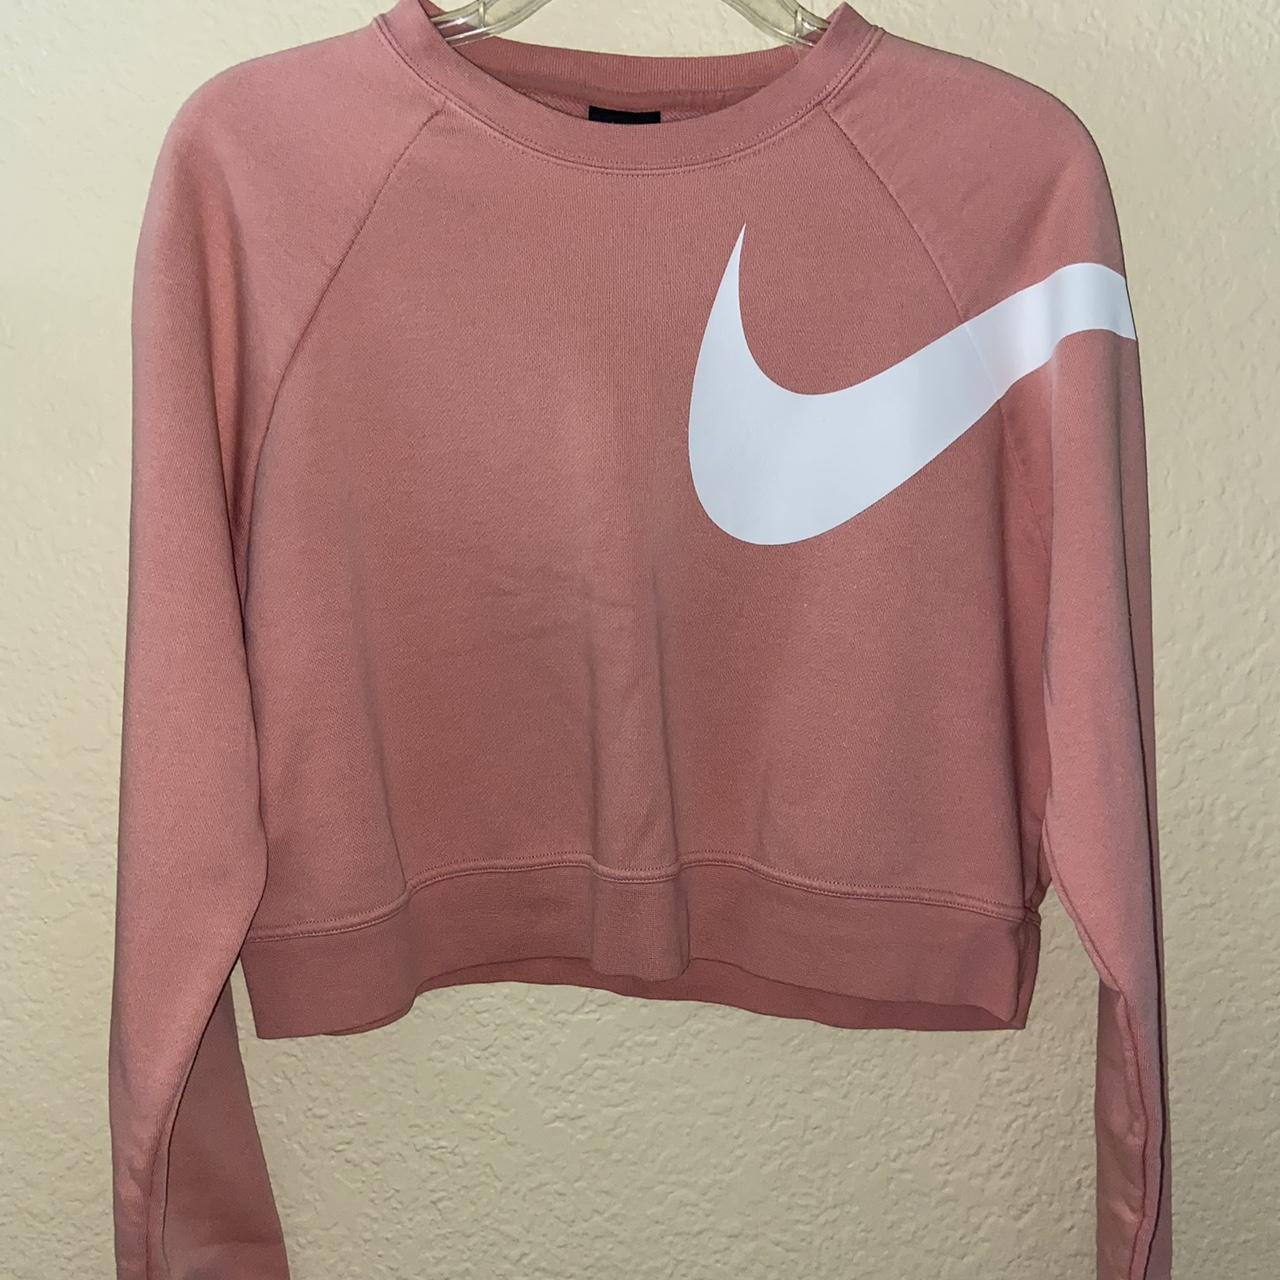 Borrar vesícula biliar Dislocación Nike Women's White and Pink Sweatshirt | Depop